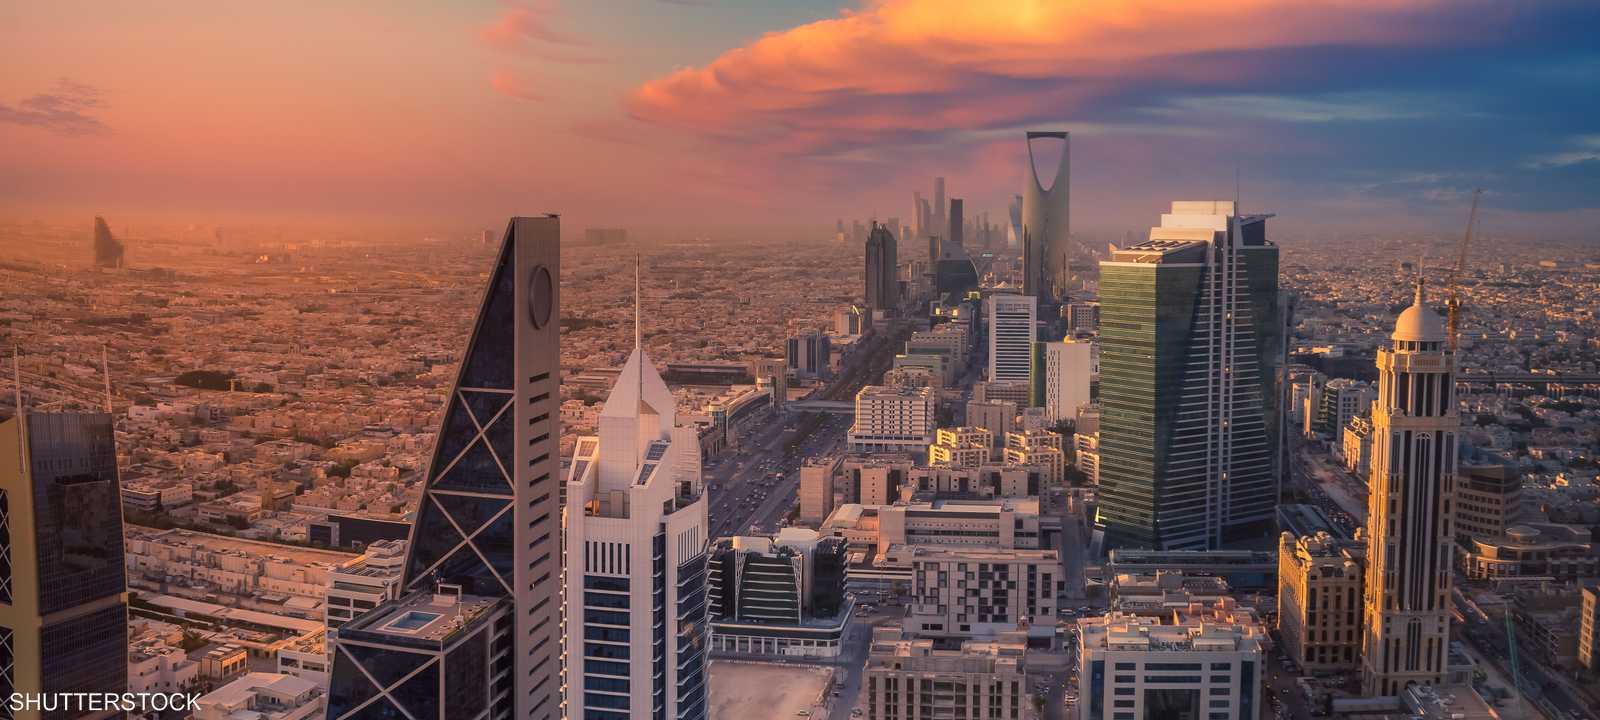 مشاريع رؤية 2030: كيف تعيد السعودية تشكيل اقتصادها؟ - تطورات قطاع الطاقة في ضوء رؤية 2030